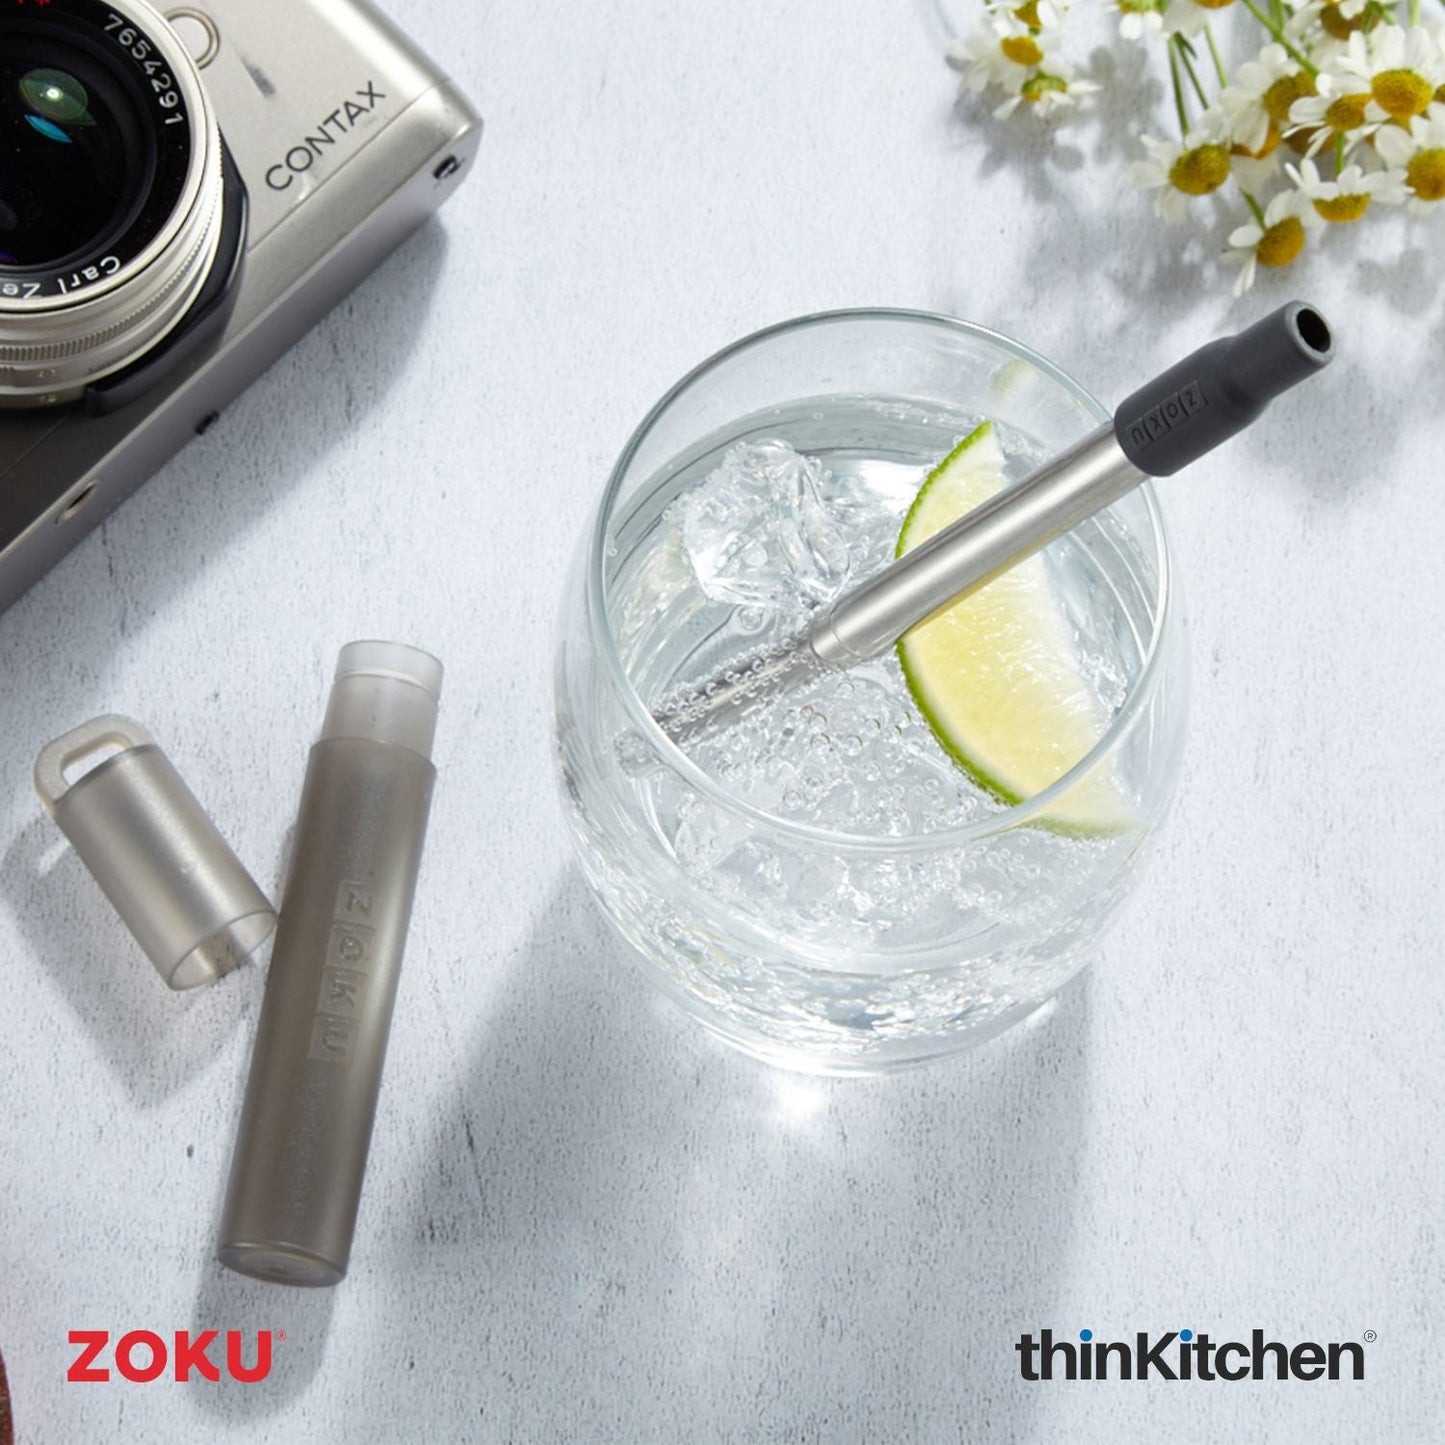 thinKitchen™ Zoku Grey Two Tone Pocket Straw